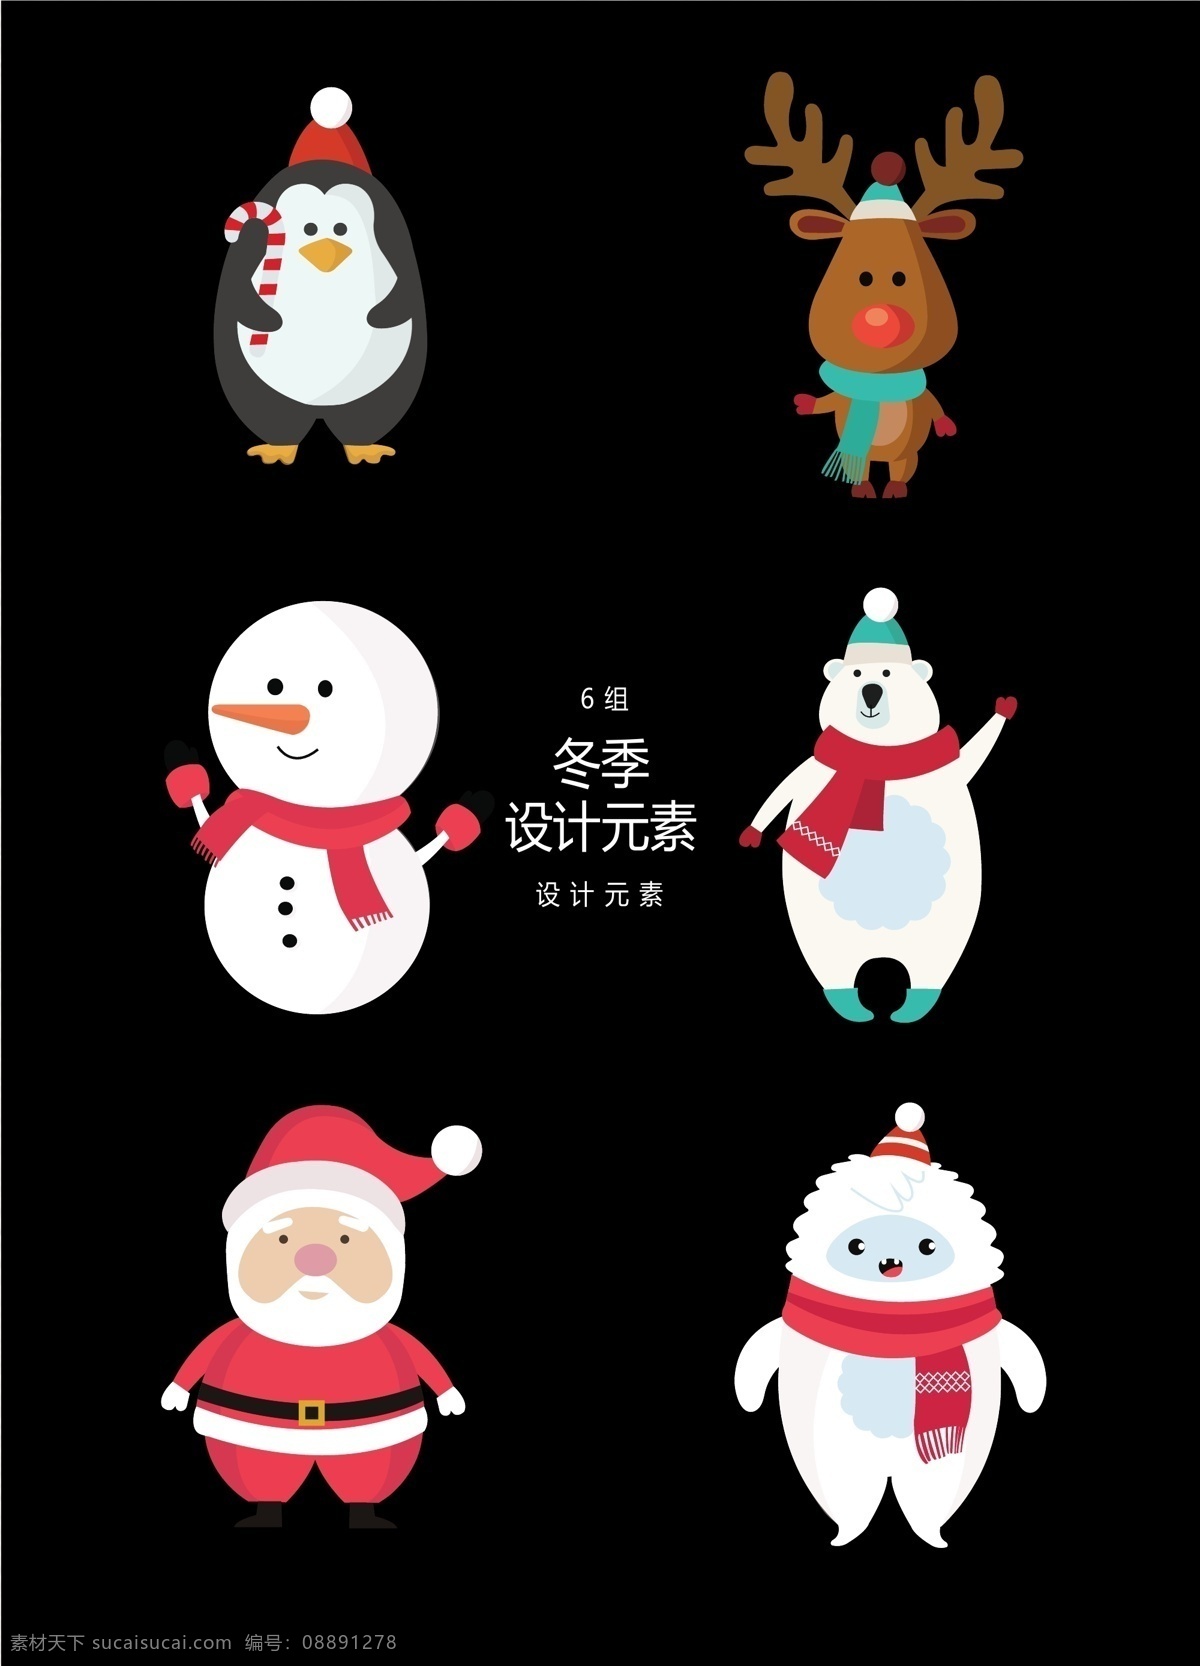 卡通 冬季 圣诞节 元素 冬天 圣诞老人 圣诞 雪人 北极熊 麋鹿 驯鹿 企鹅